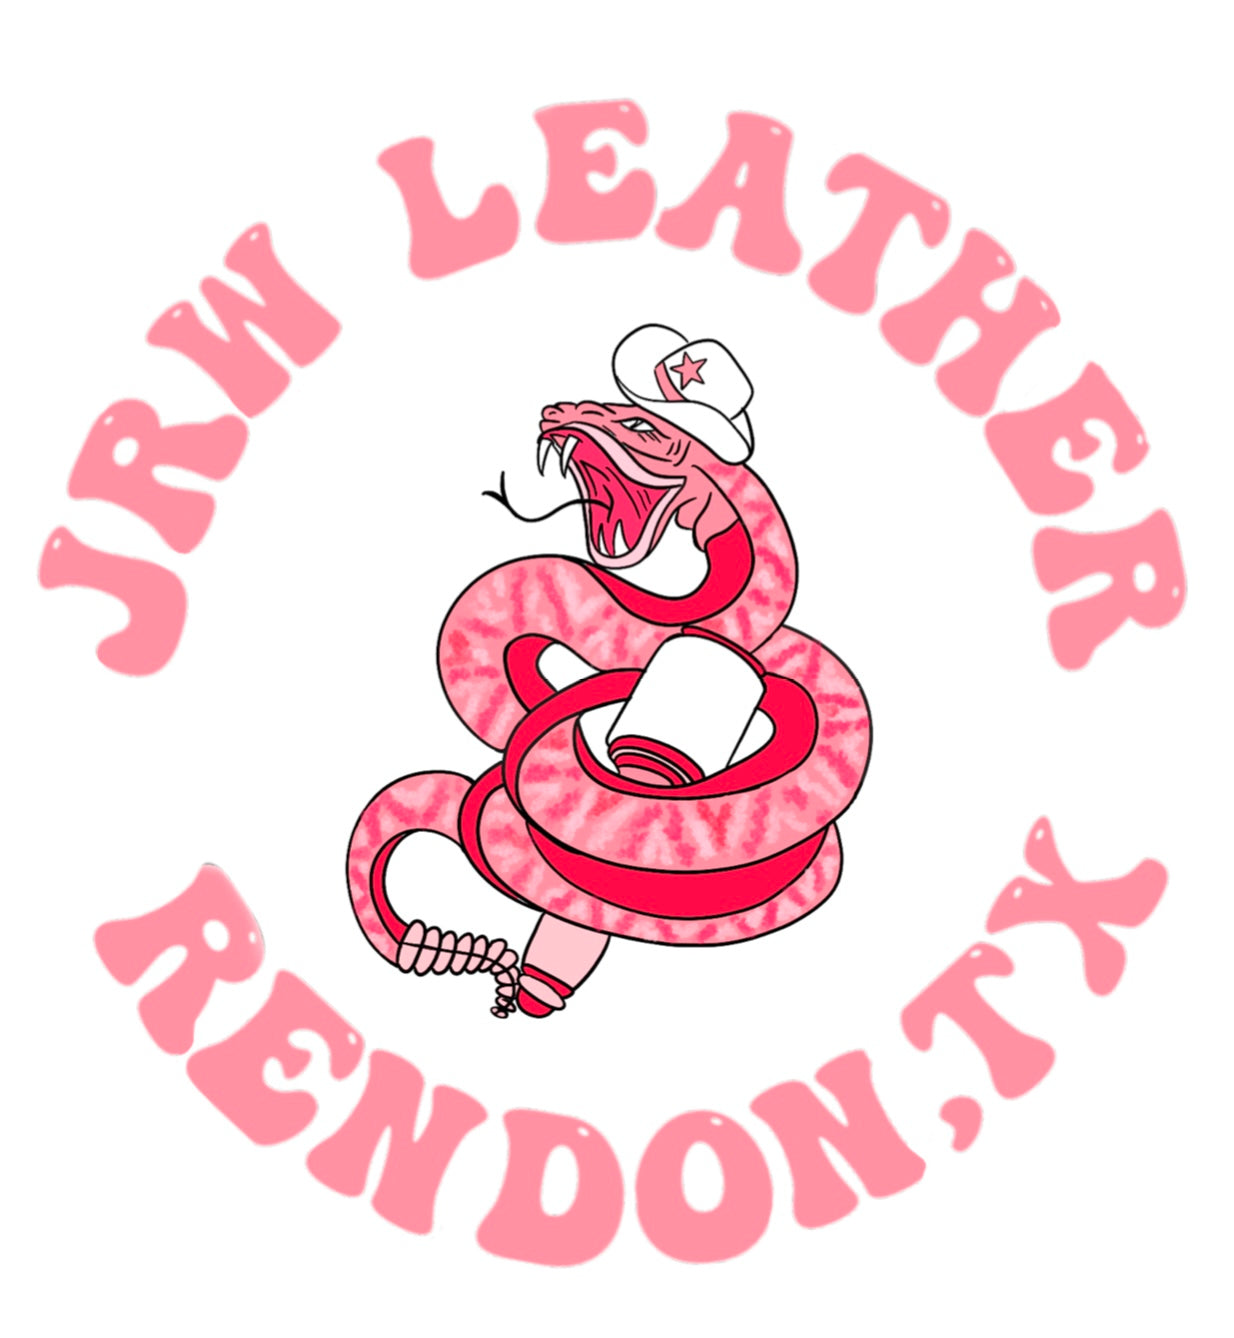 JRW Leather